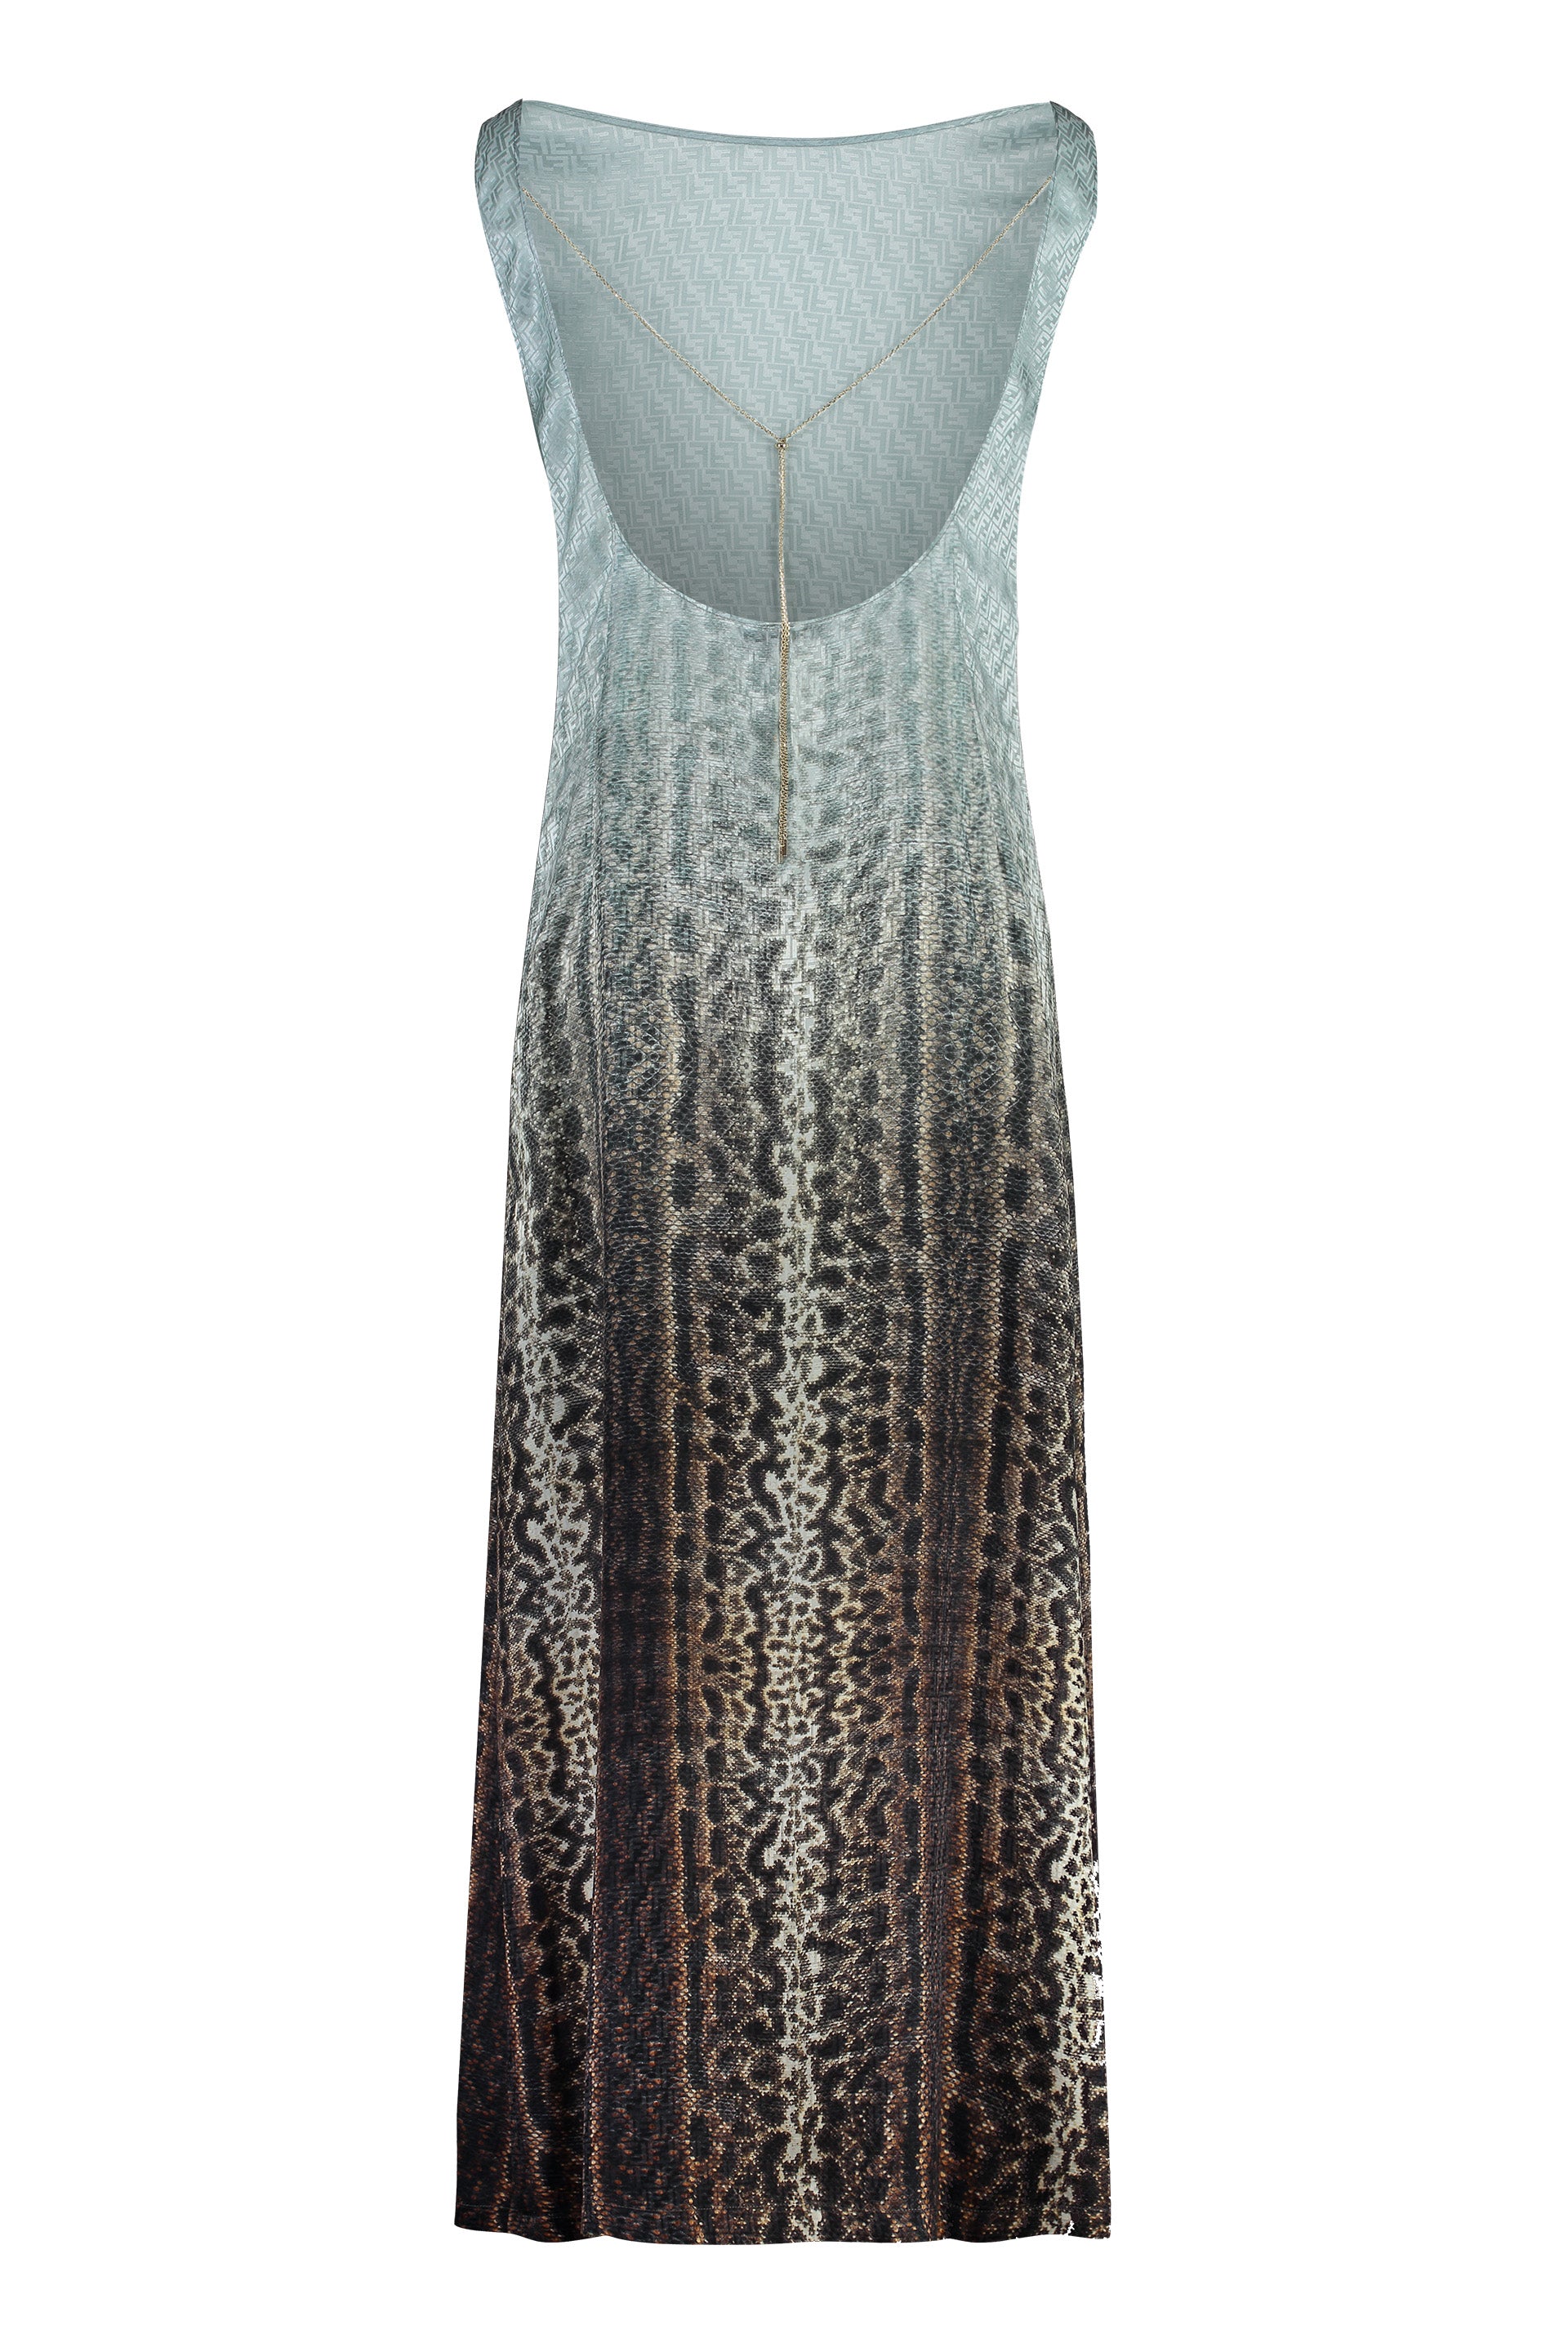 Shop Fendi Navy Animal Print Silk Dress For Women In Light Blue